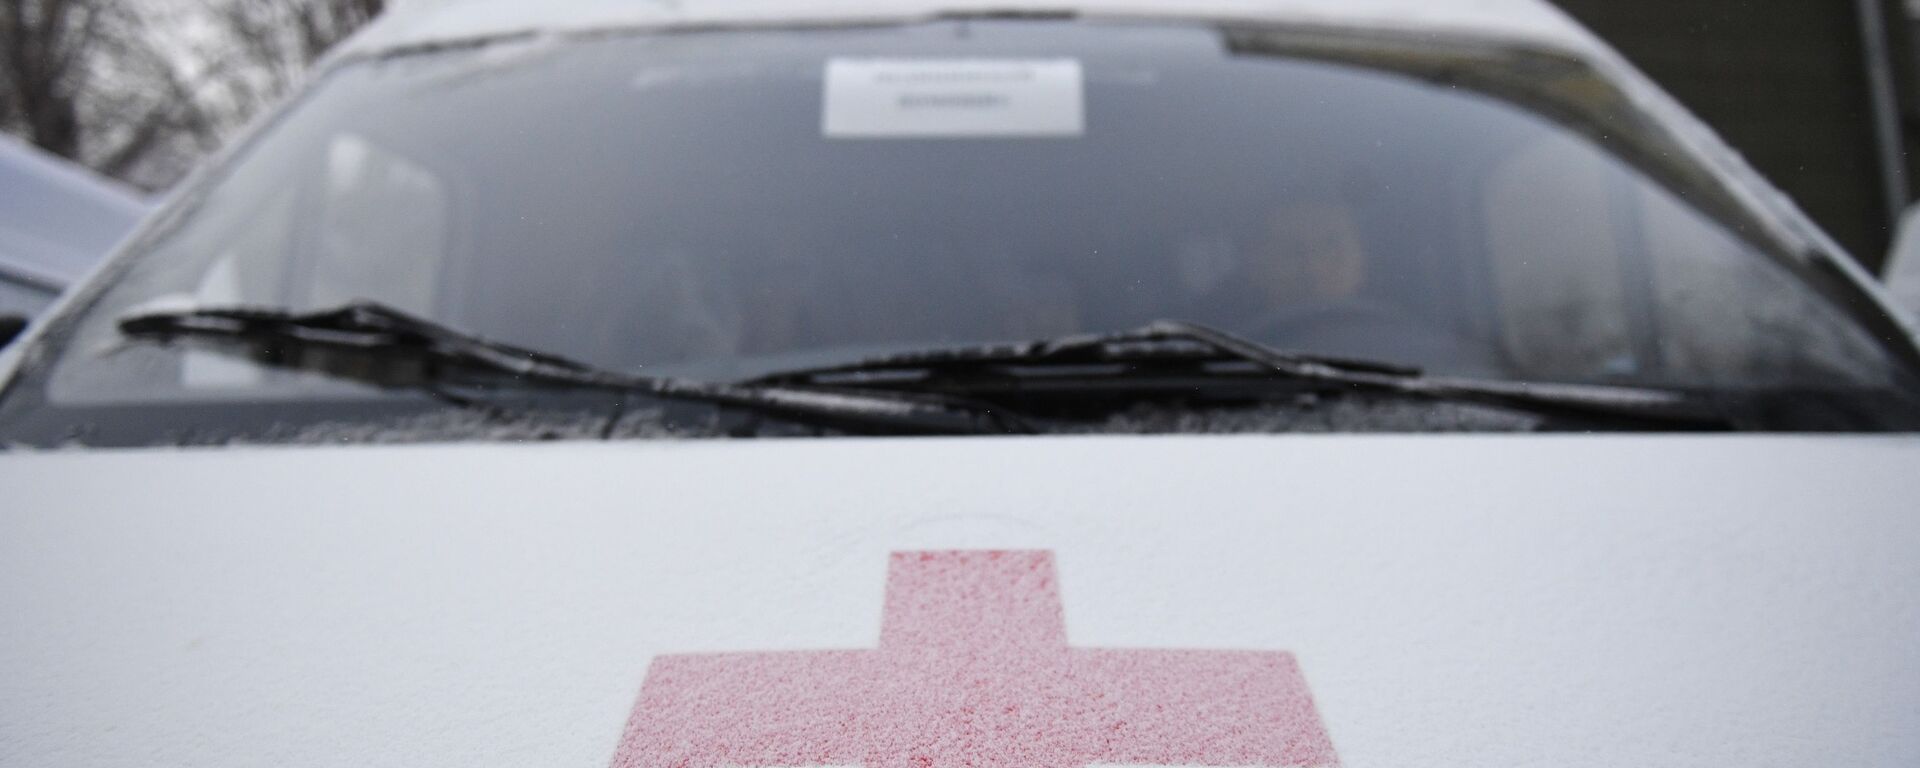 Эмблема Международной организации Красного креста на автомобиле скорой помощи - Sputnik Узбекистан, 1920, 05.04.2021